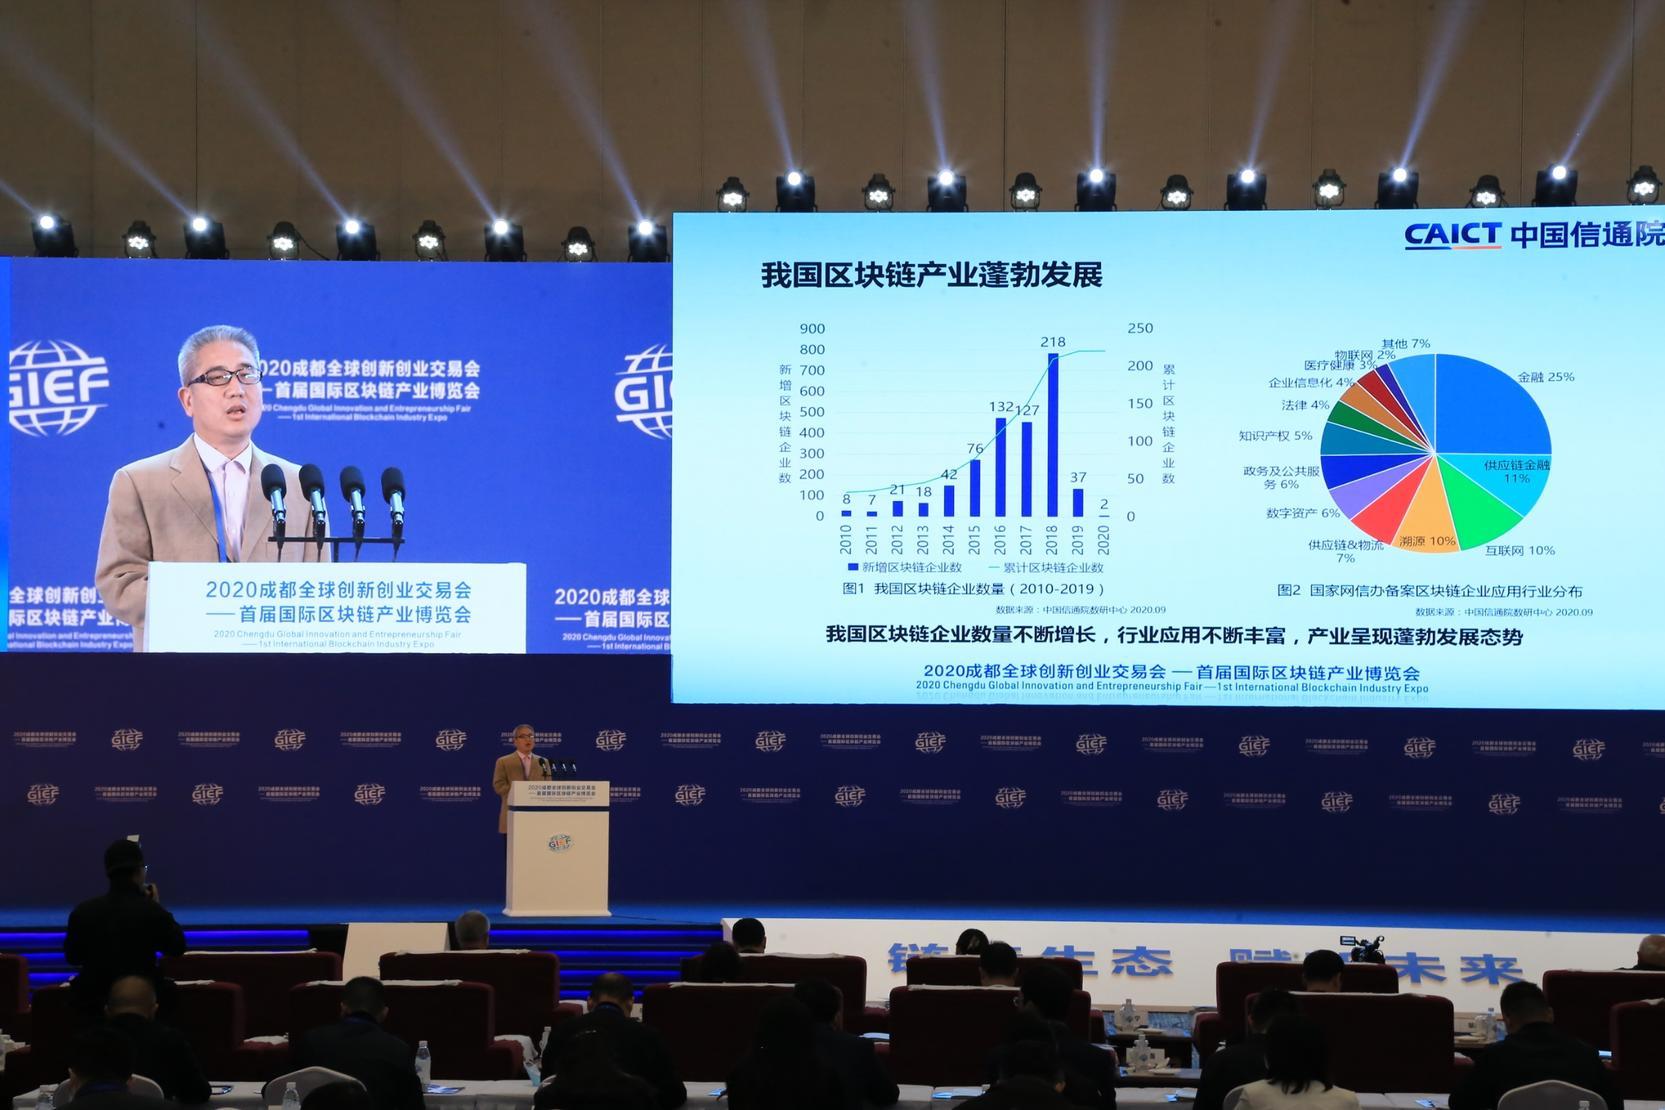  中国信息通信研究院副总工程师续合元在大会上演讲  图片来源：主办方供图